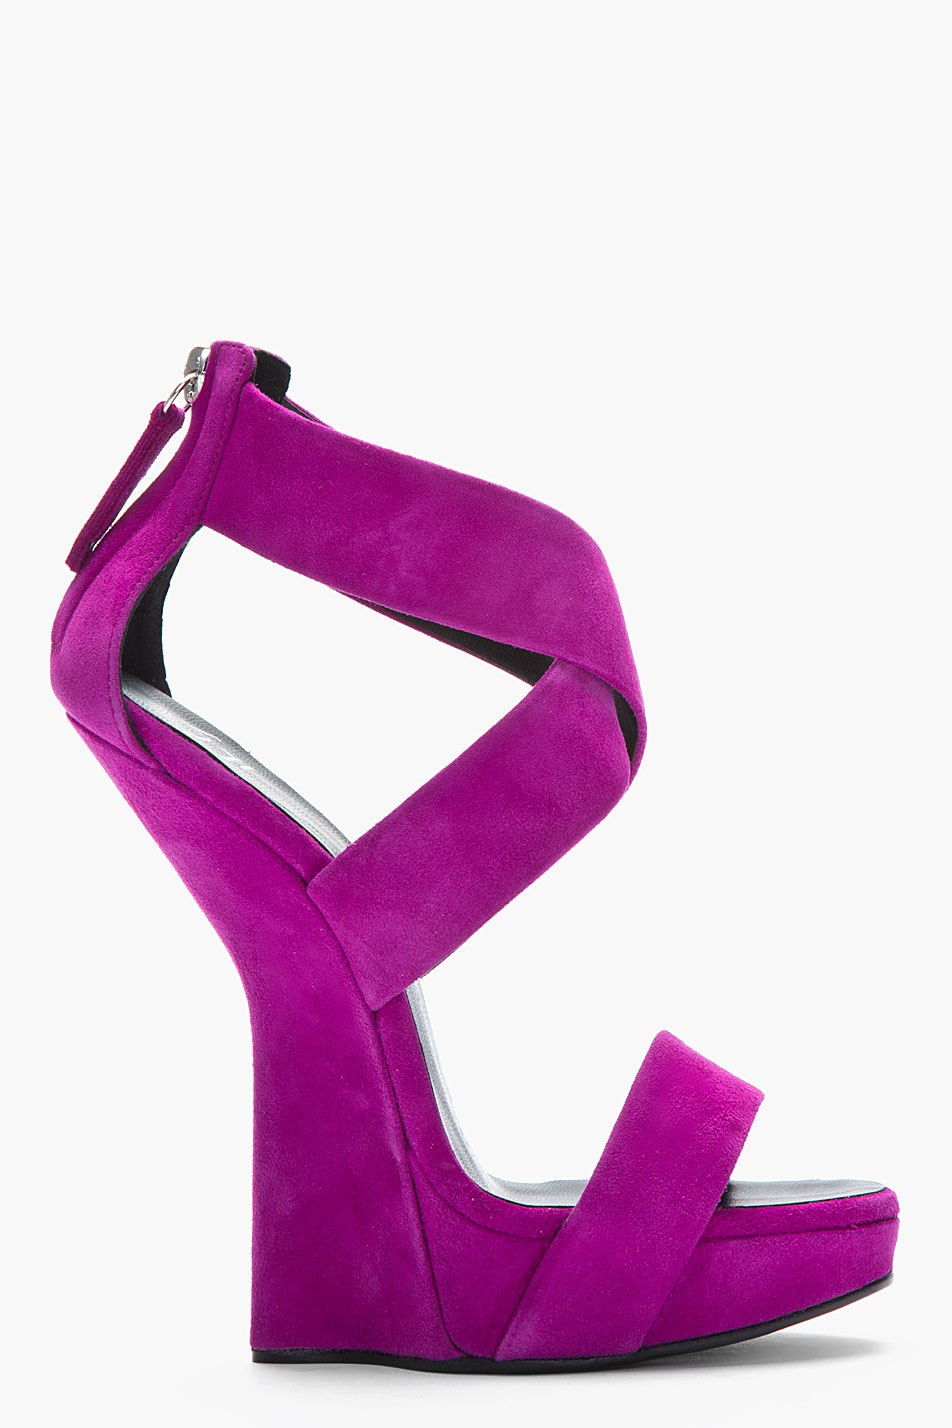 Lyst - Giuseppe Zanotti Purple Suede Sculpted Alien Heels in Purple